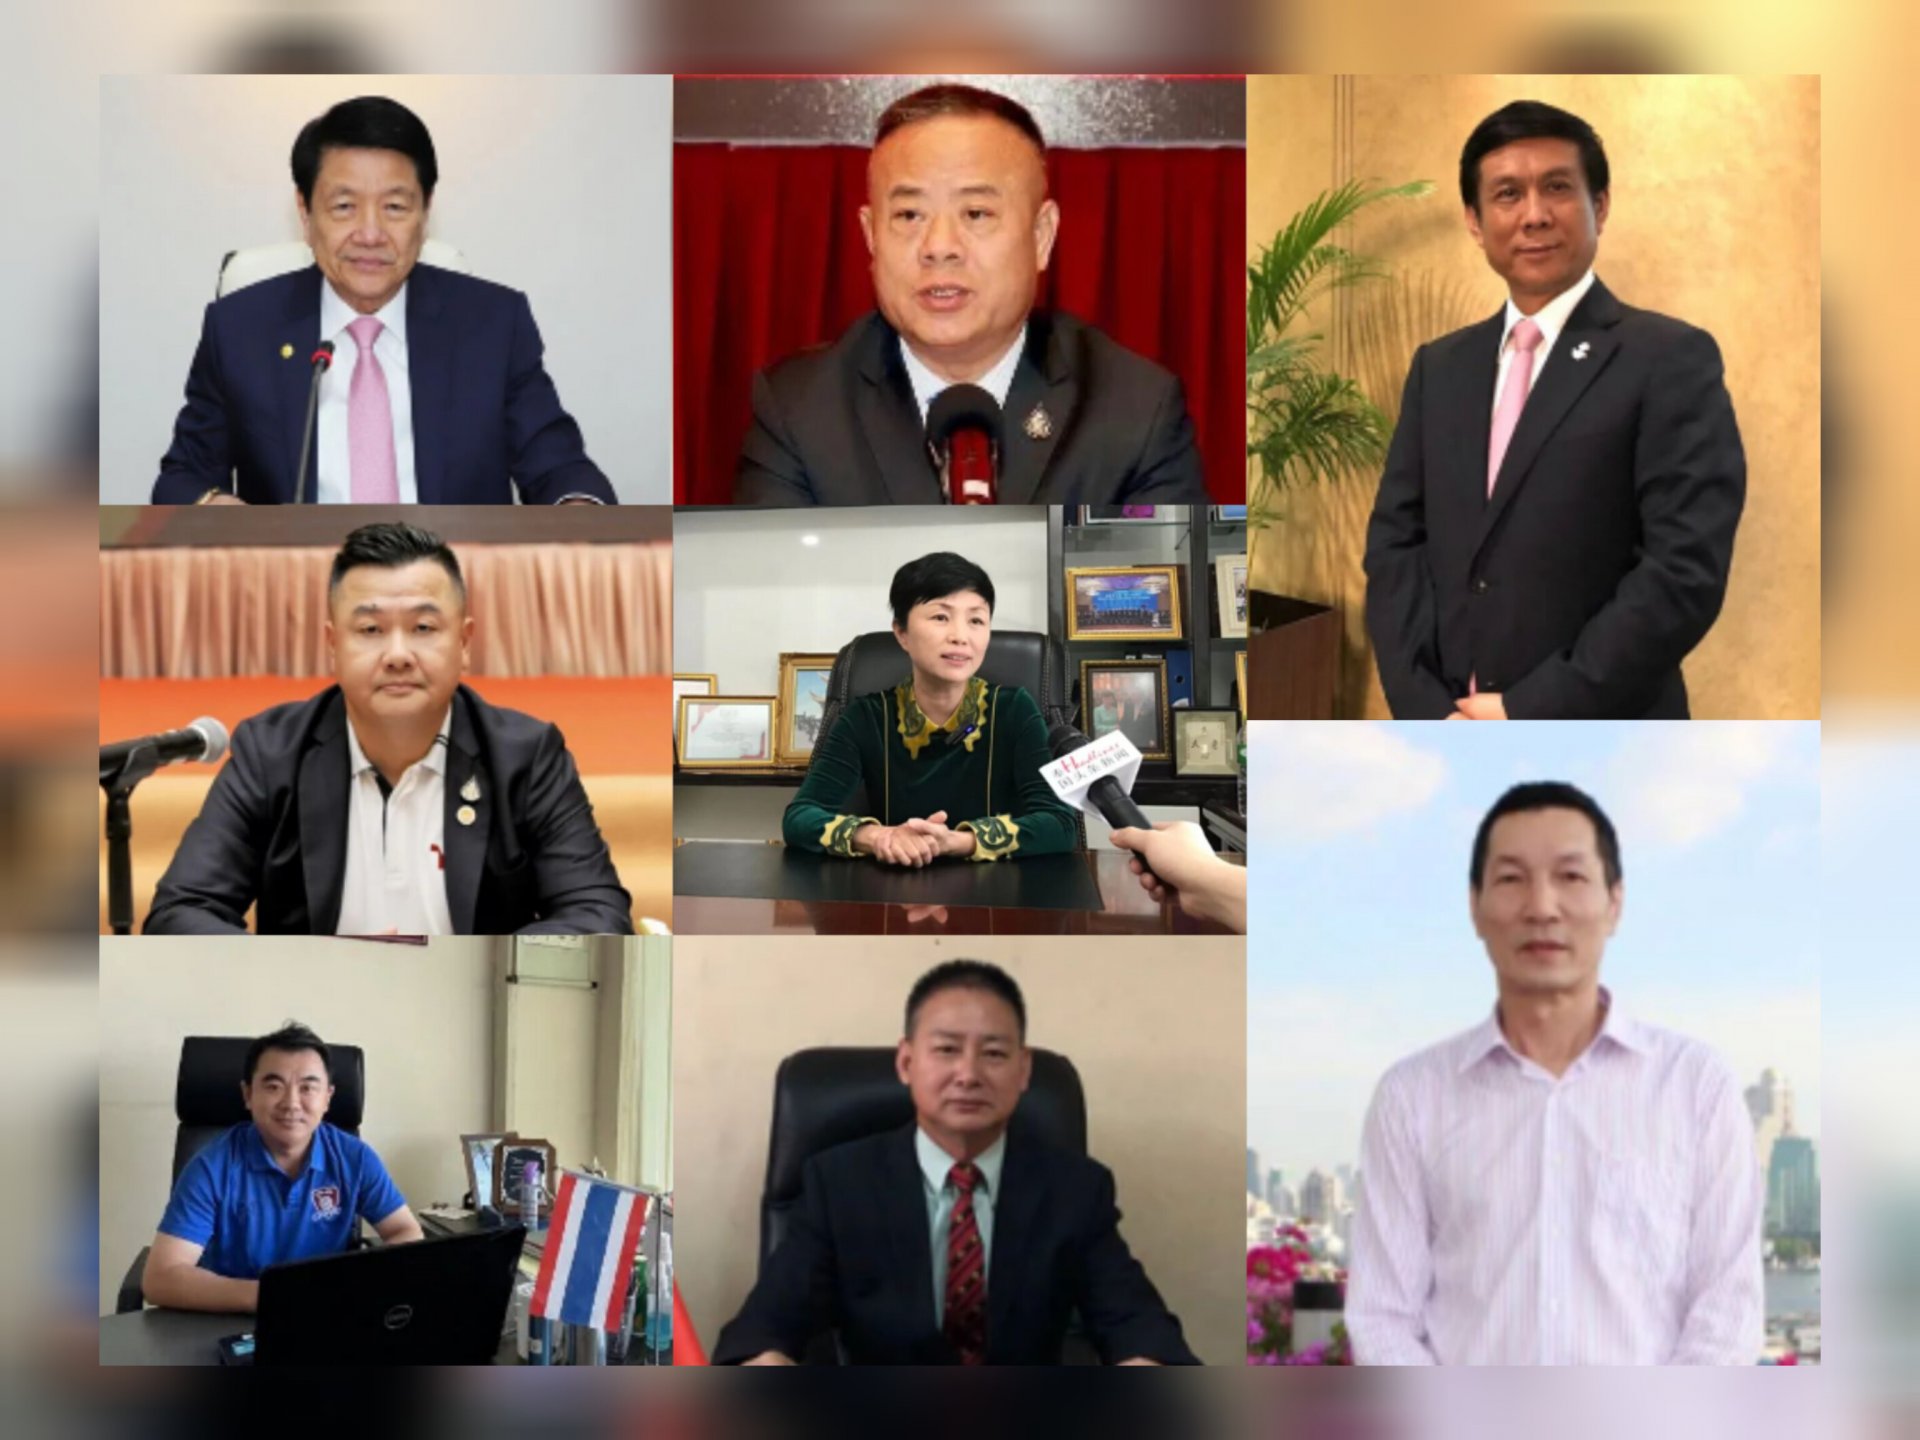 泰国头条新闻就APEC会议召开，独家采访泰国侨界领袖